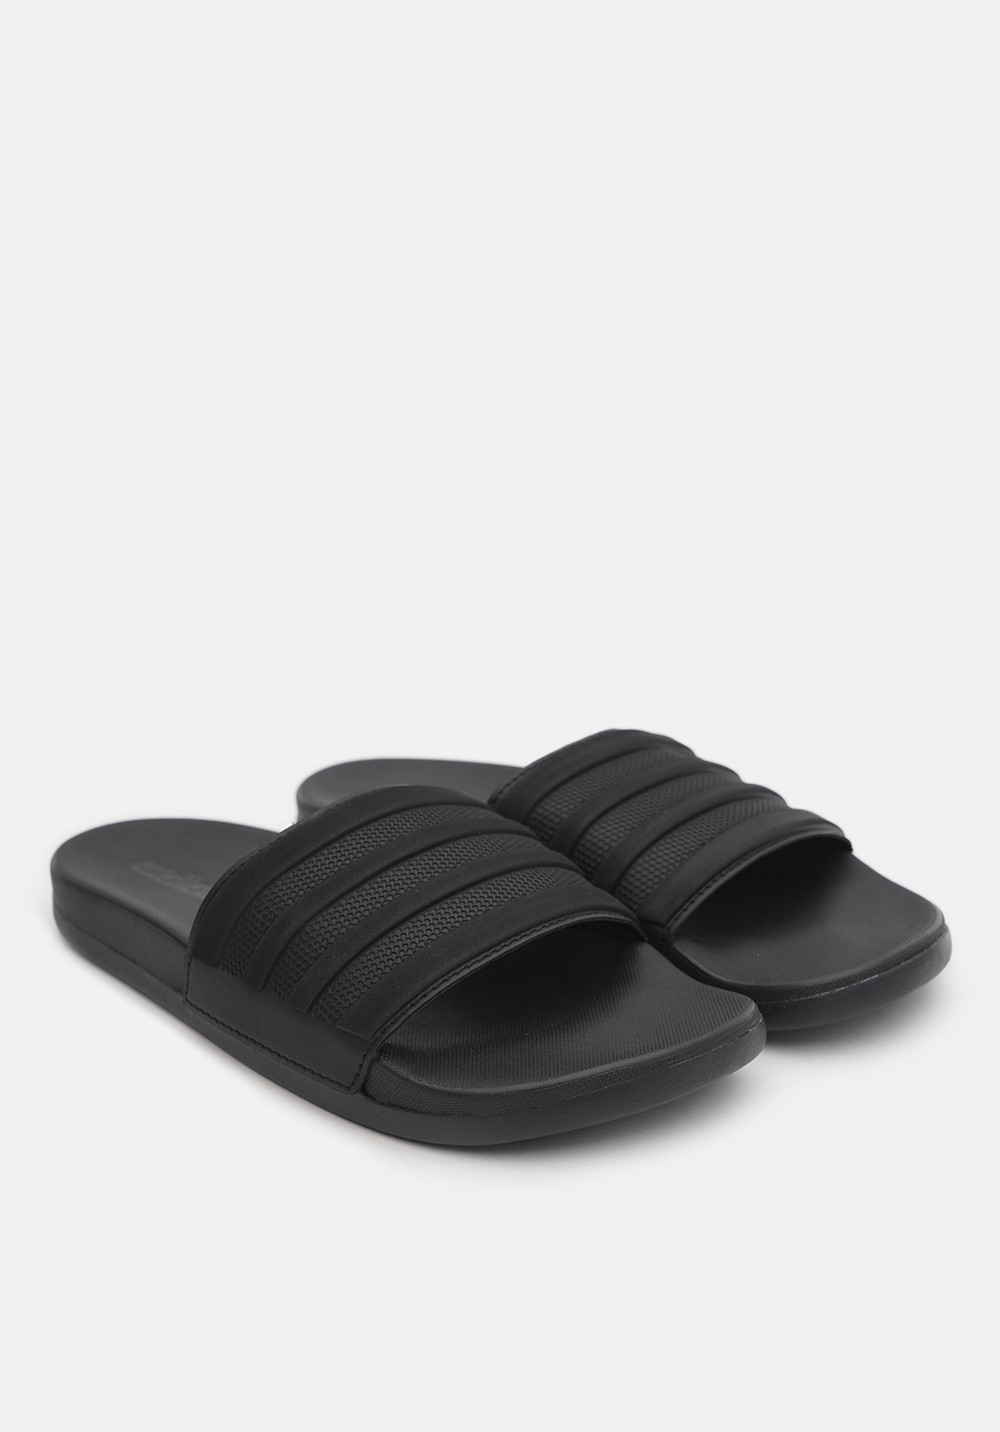 Пляжная обувь мужская Adidas ADILETTE COMFORT черная ID3406 изображение 3